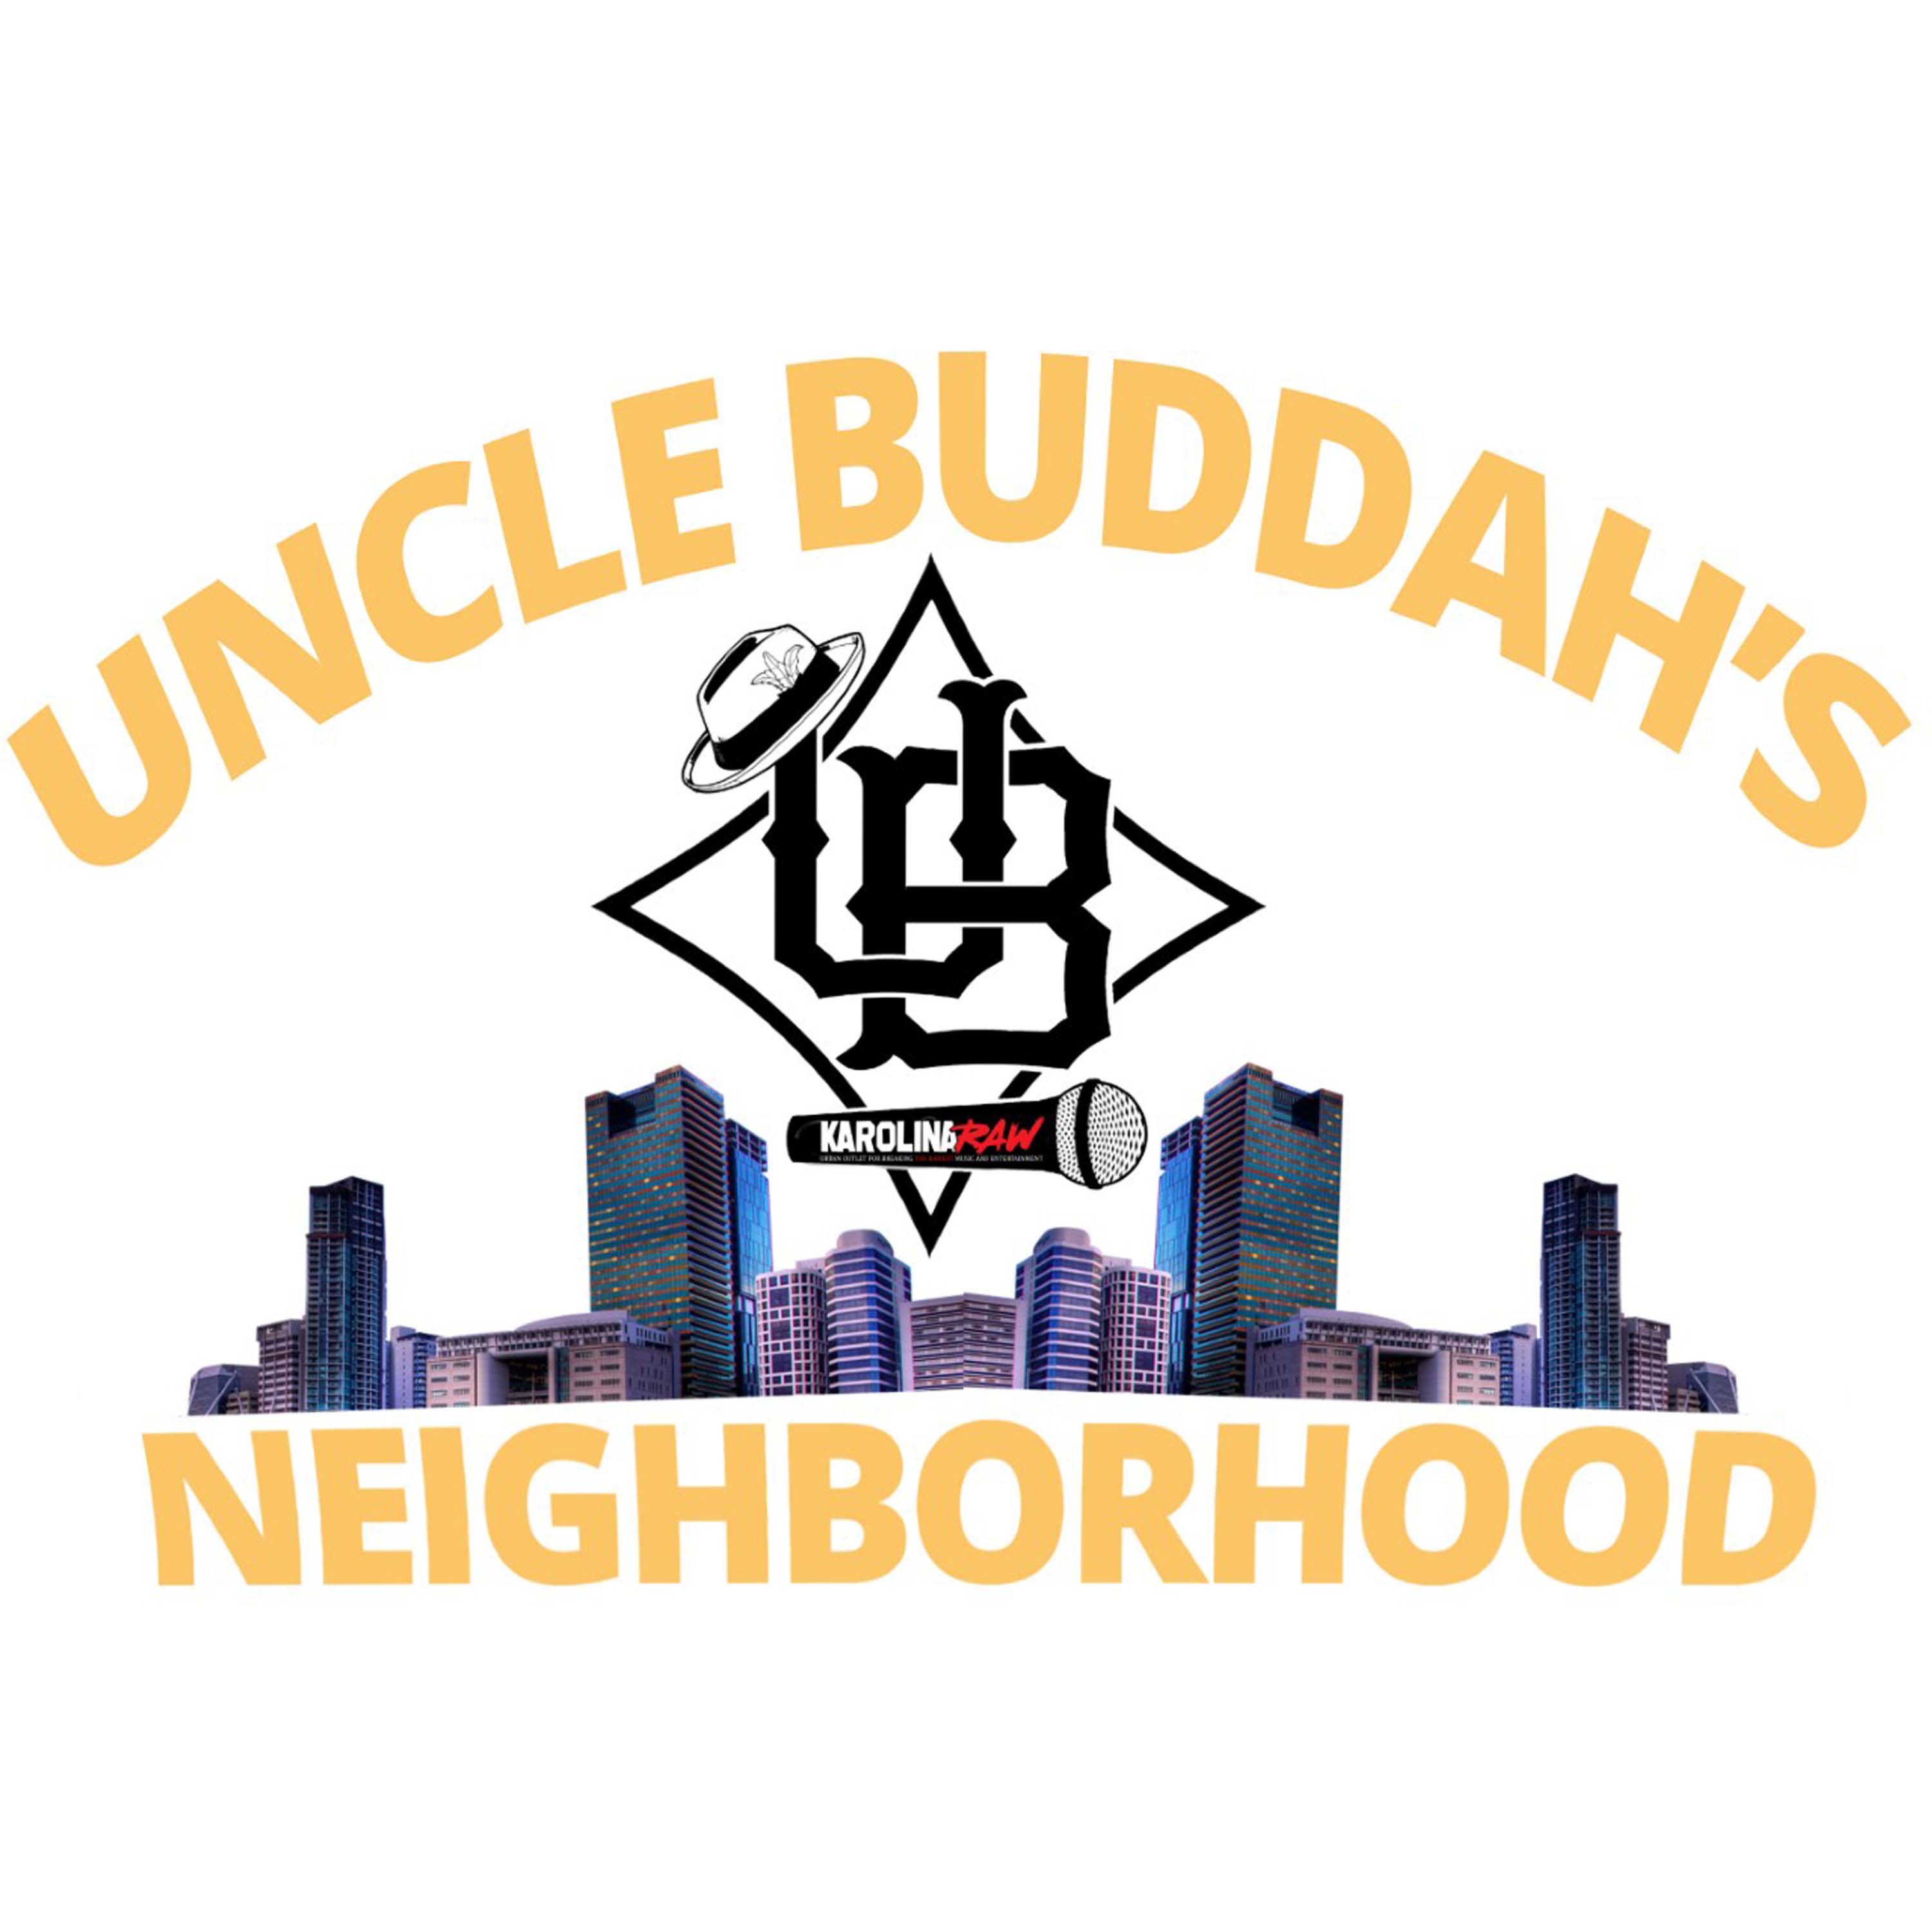 Uncle Buddah's Neighborhood